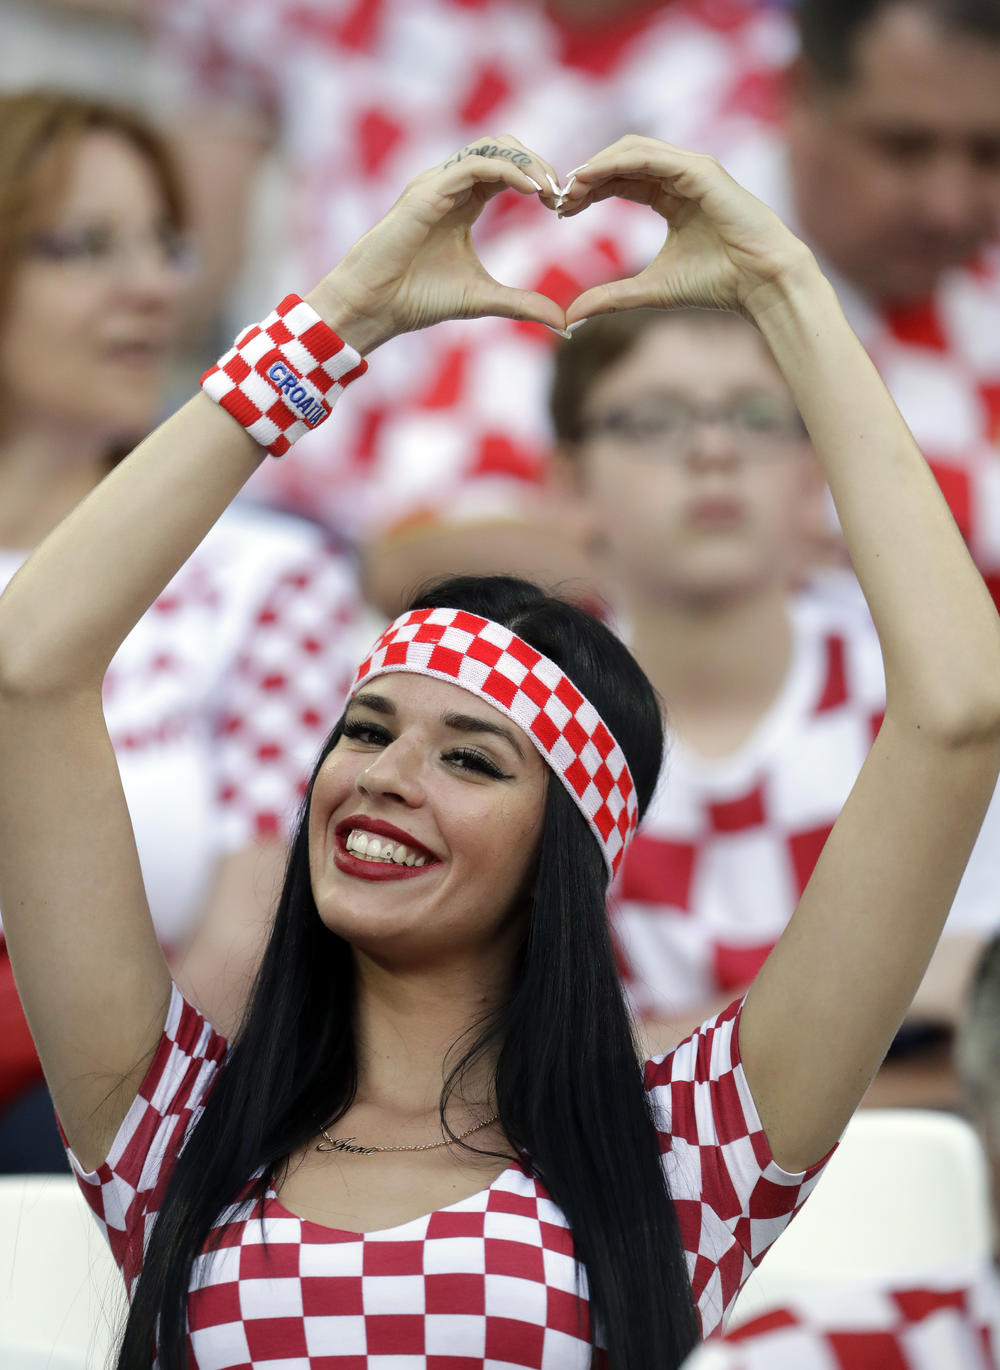 Ova hrvatska lepotica je pokupila veliki broj bliceva pre početka utakmice  